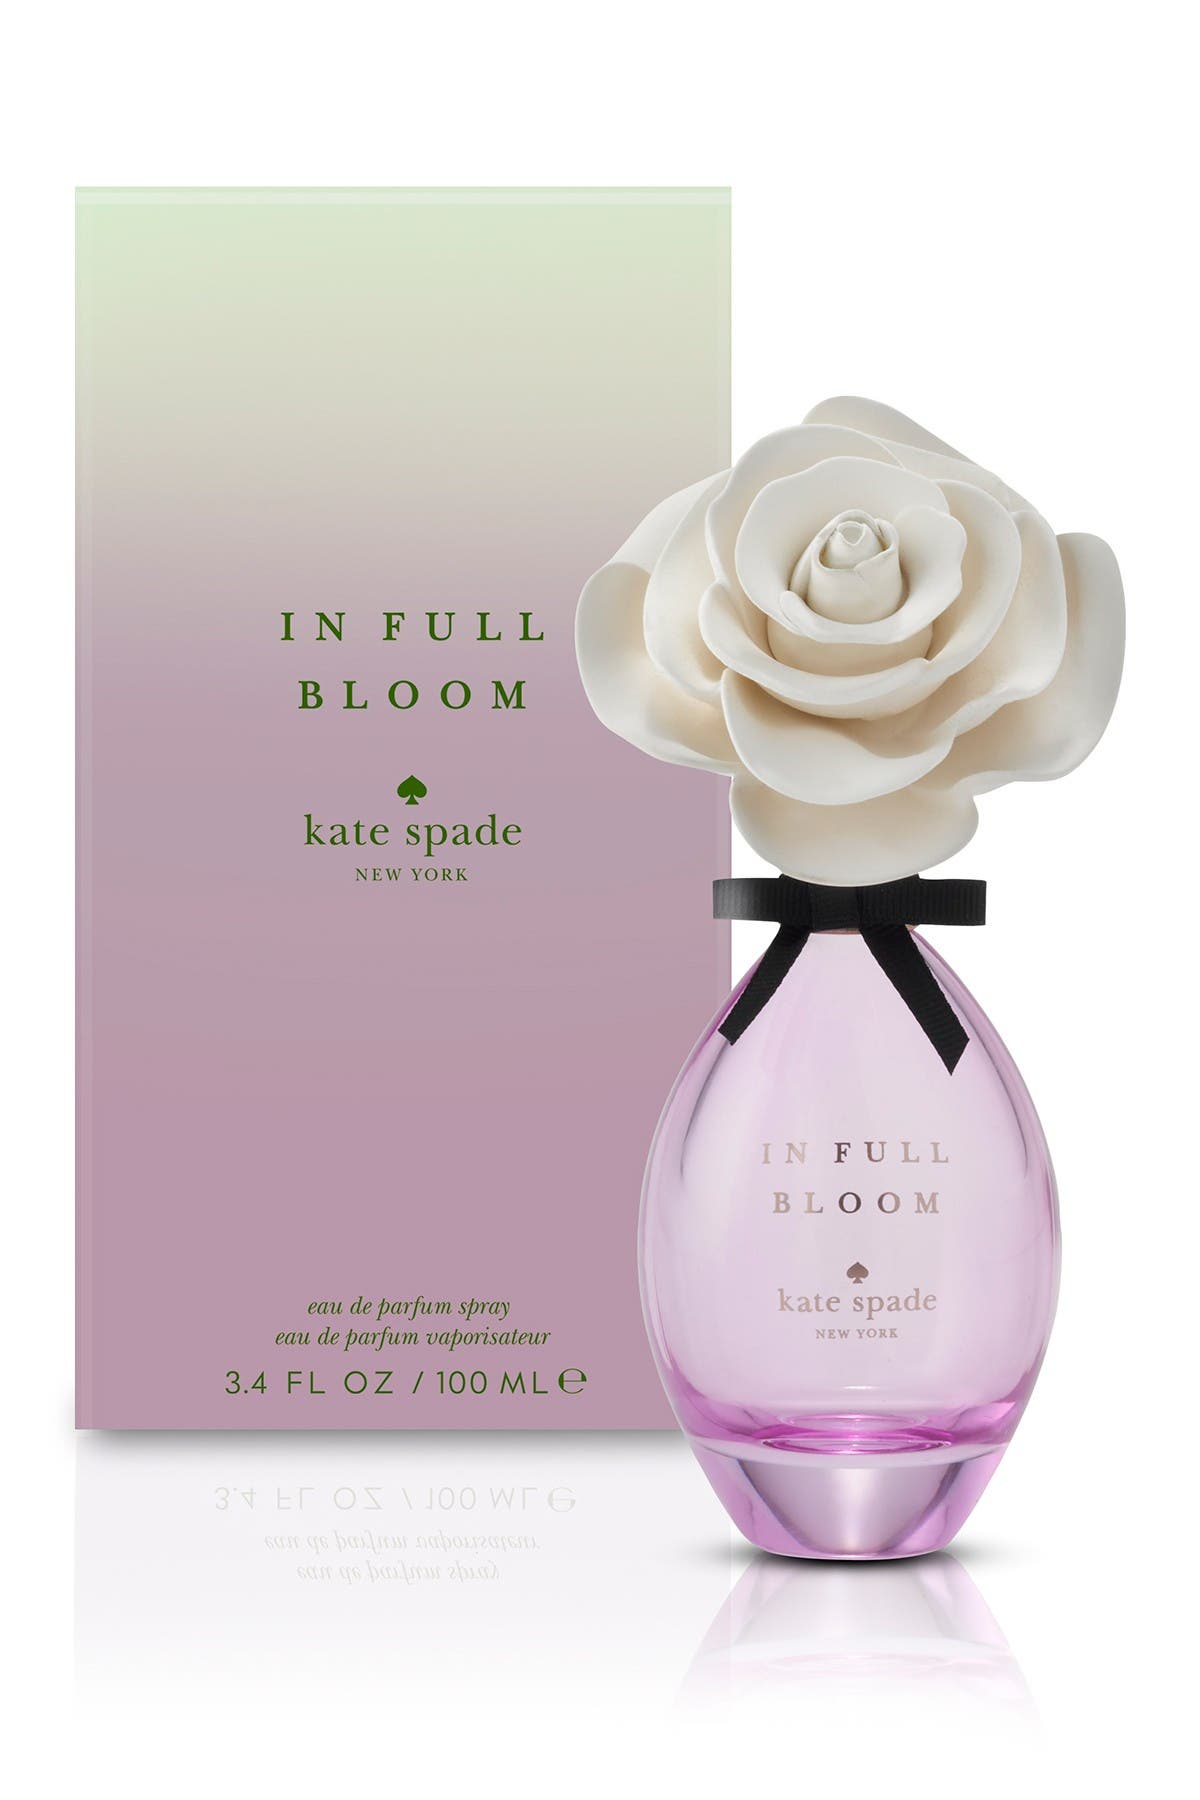 in full bloom kate spade perfume